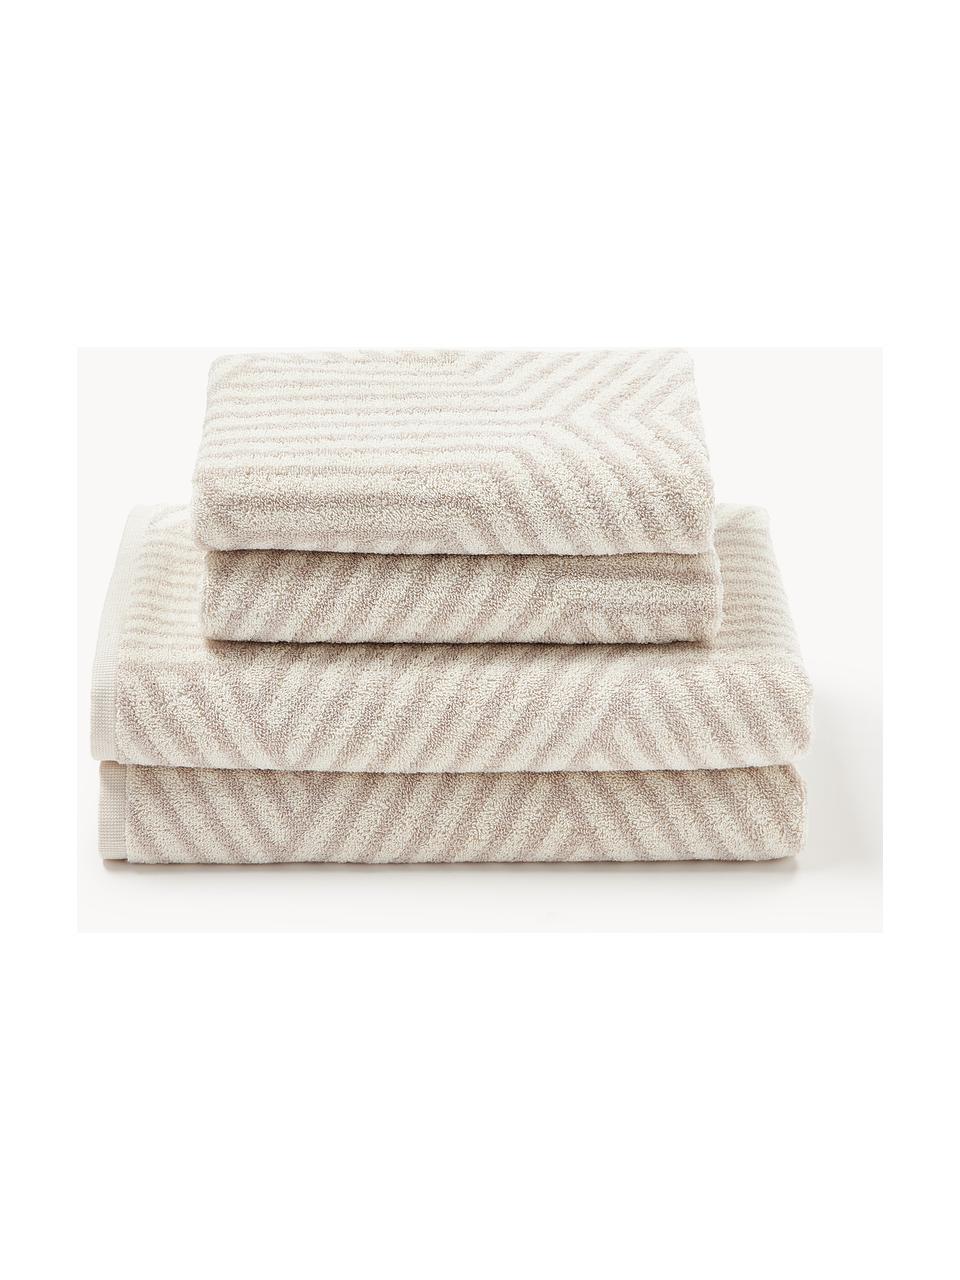 Lot de serviettes de bain Fatu, tailles variées, Tons beige clair, 3 éléments (1 serviette invité, 1 serviette de toilette et 1 drap de bain)